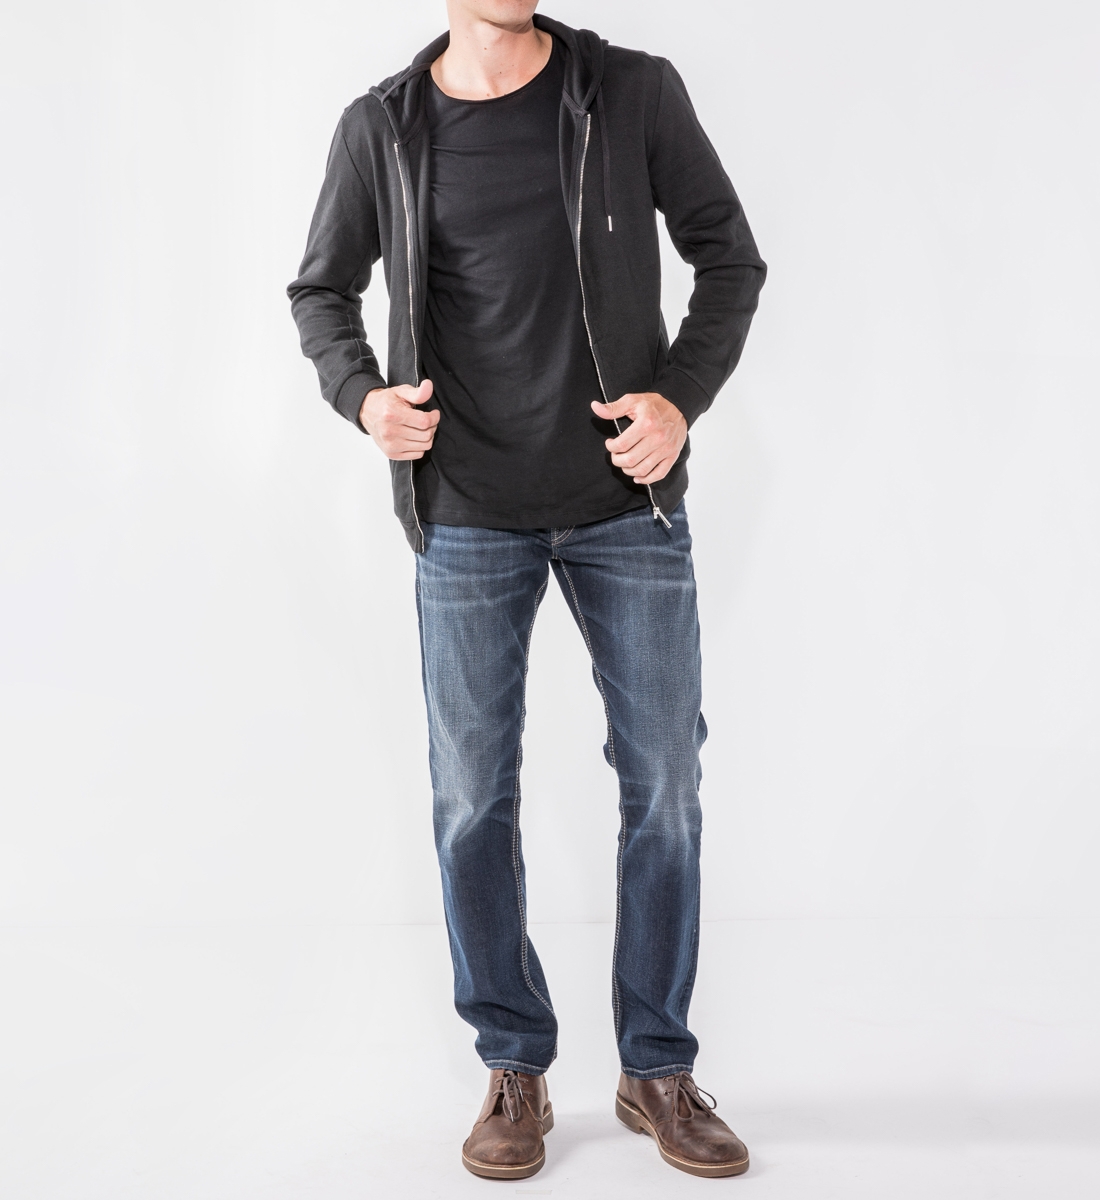 Men's Skinny Slim Jeans in Dark Wash Resin - Grey Stitch | DSTLD